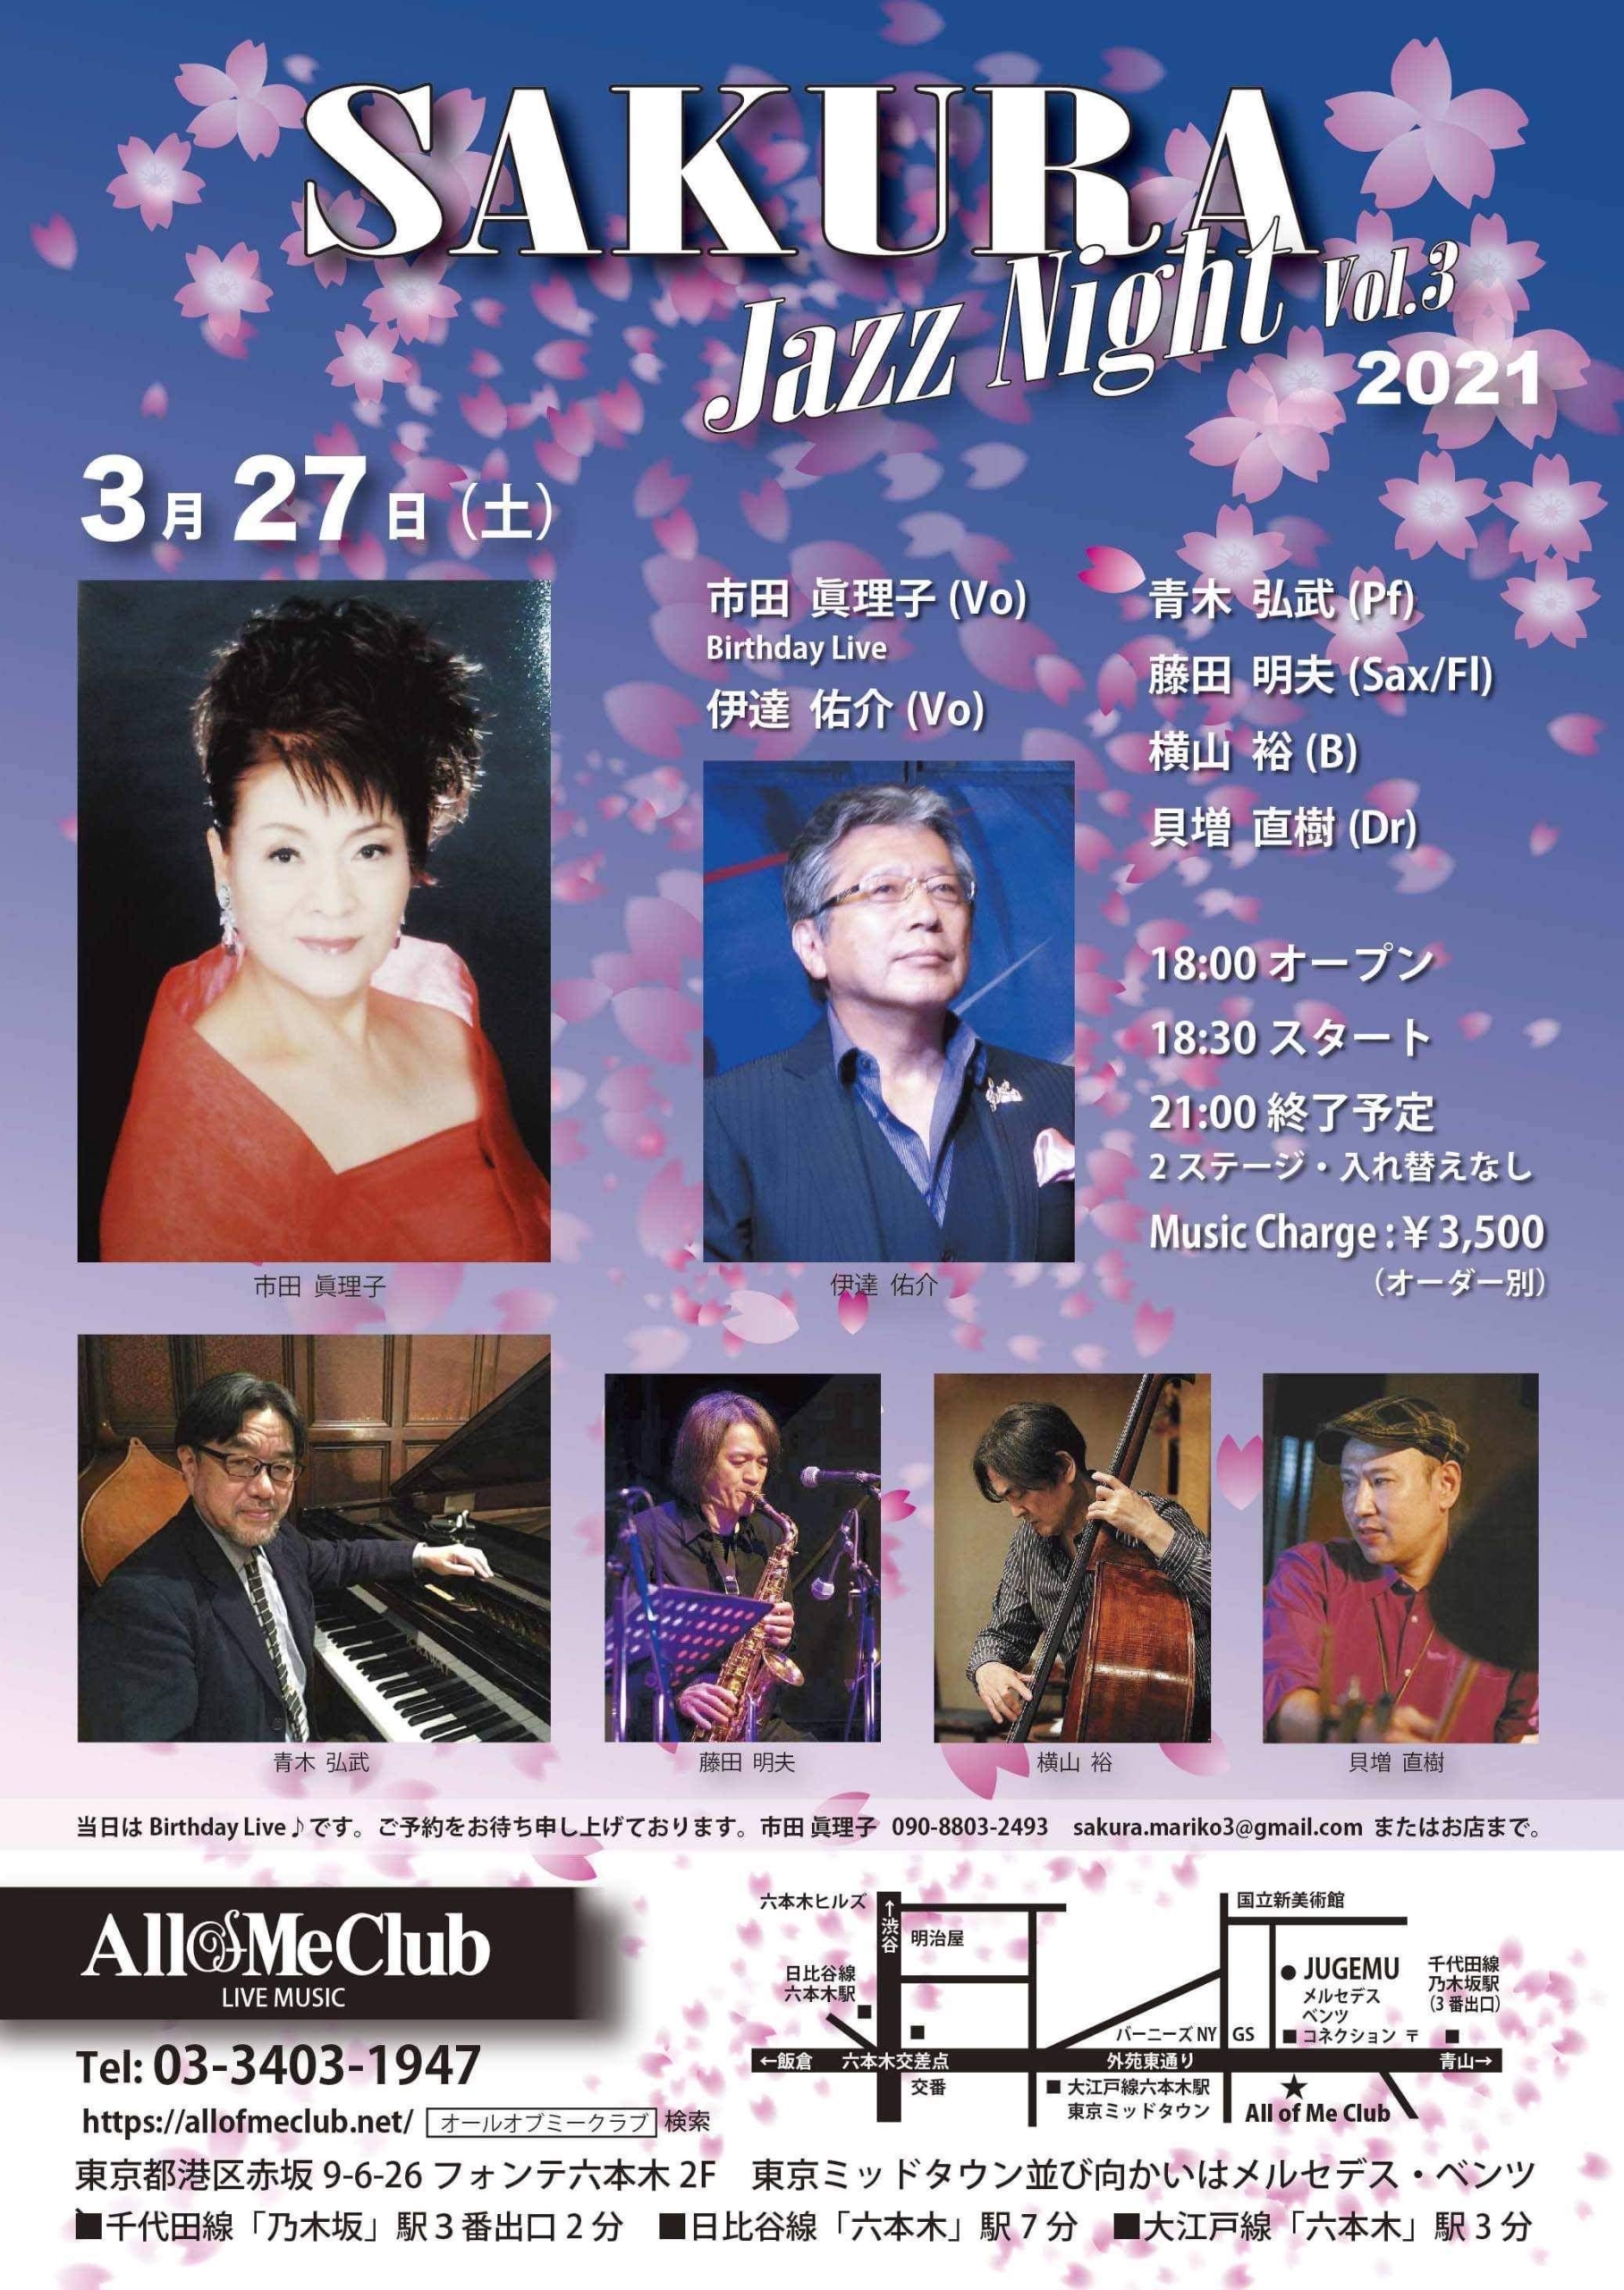 SAKURA Jazz Night Vol.3